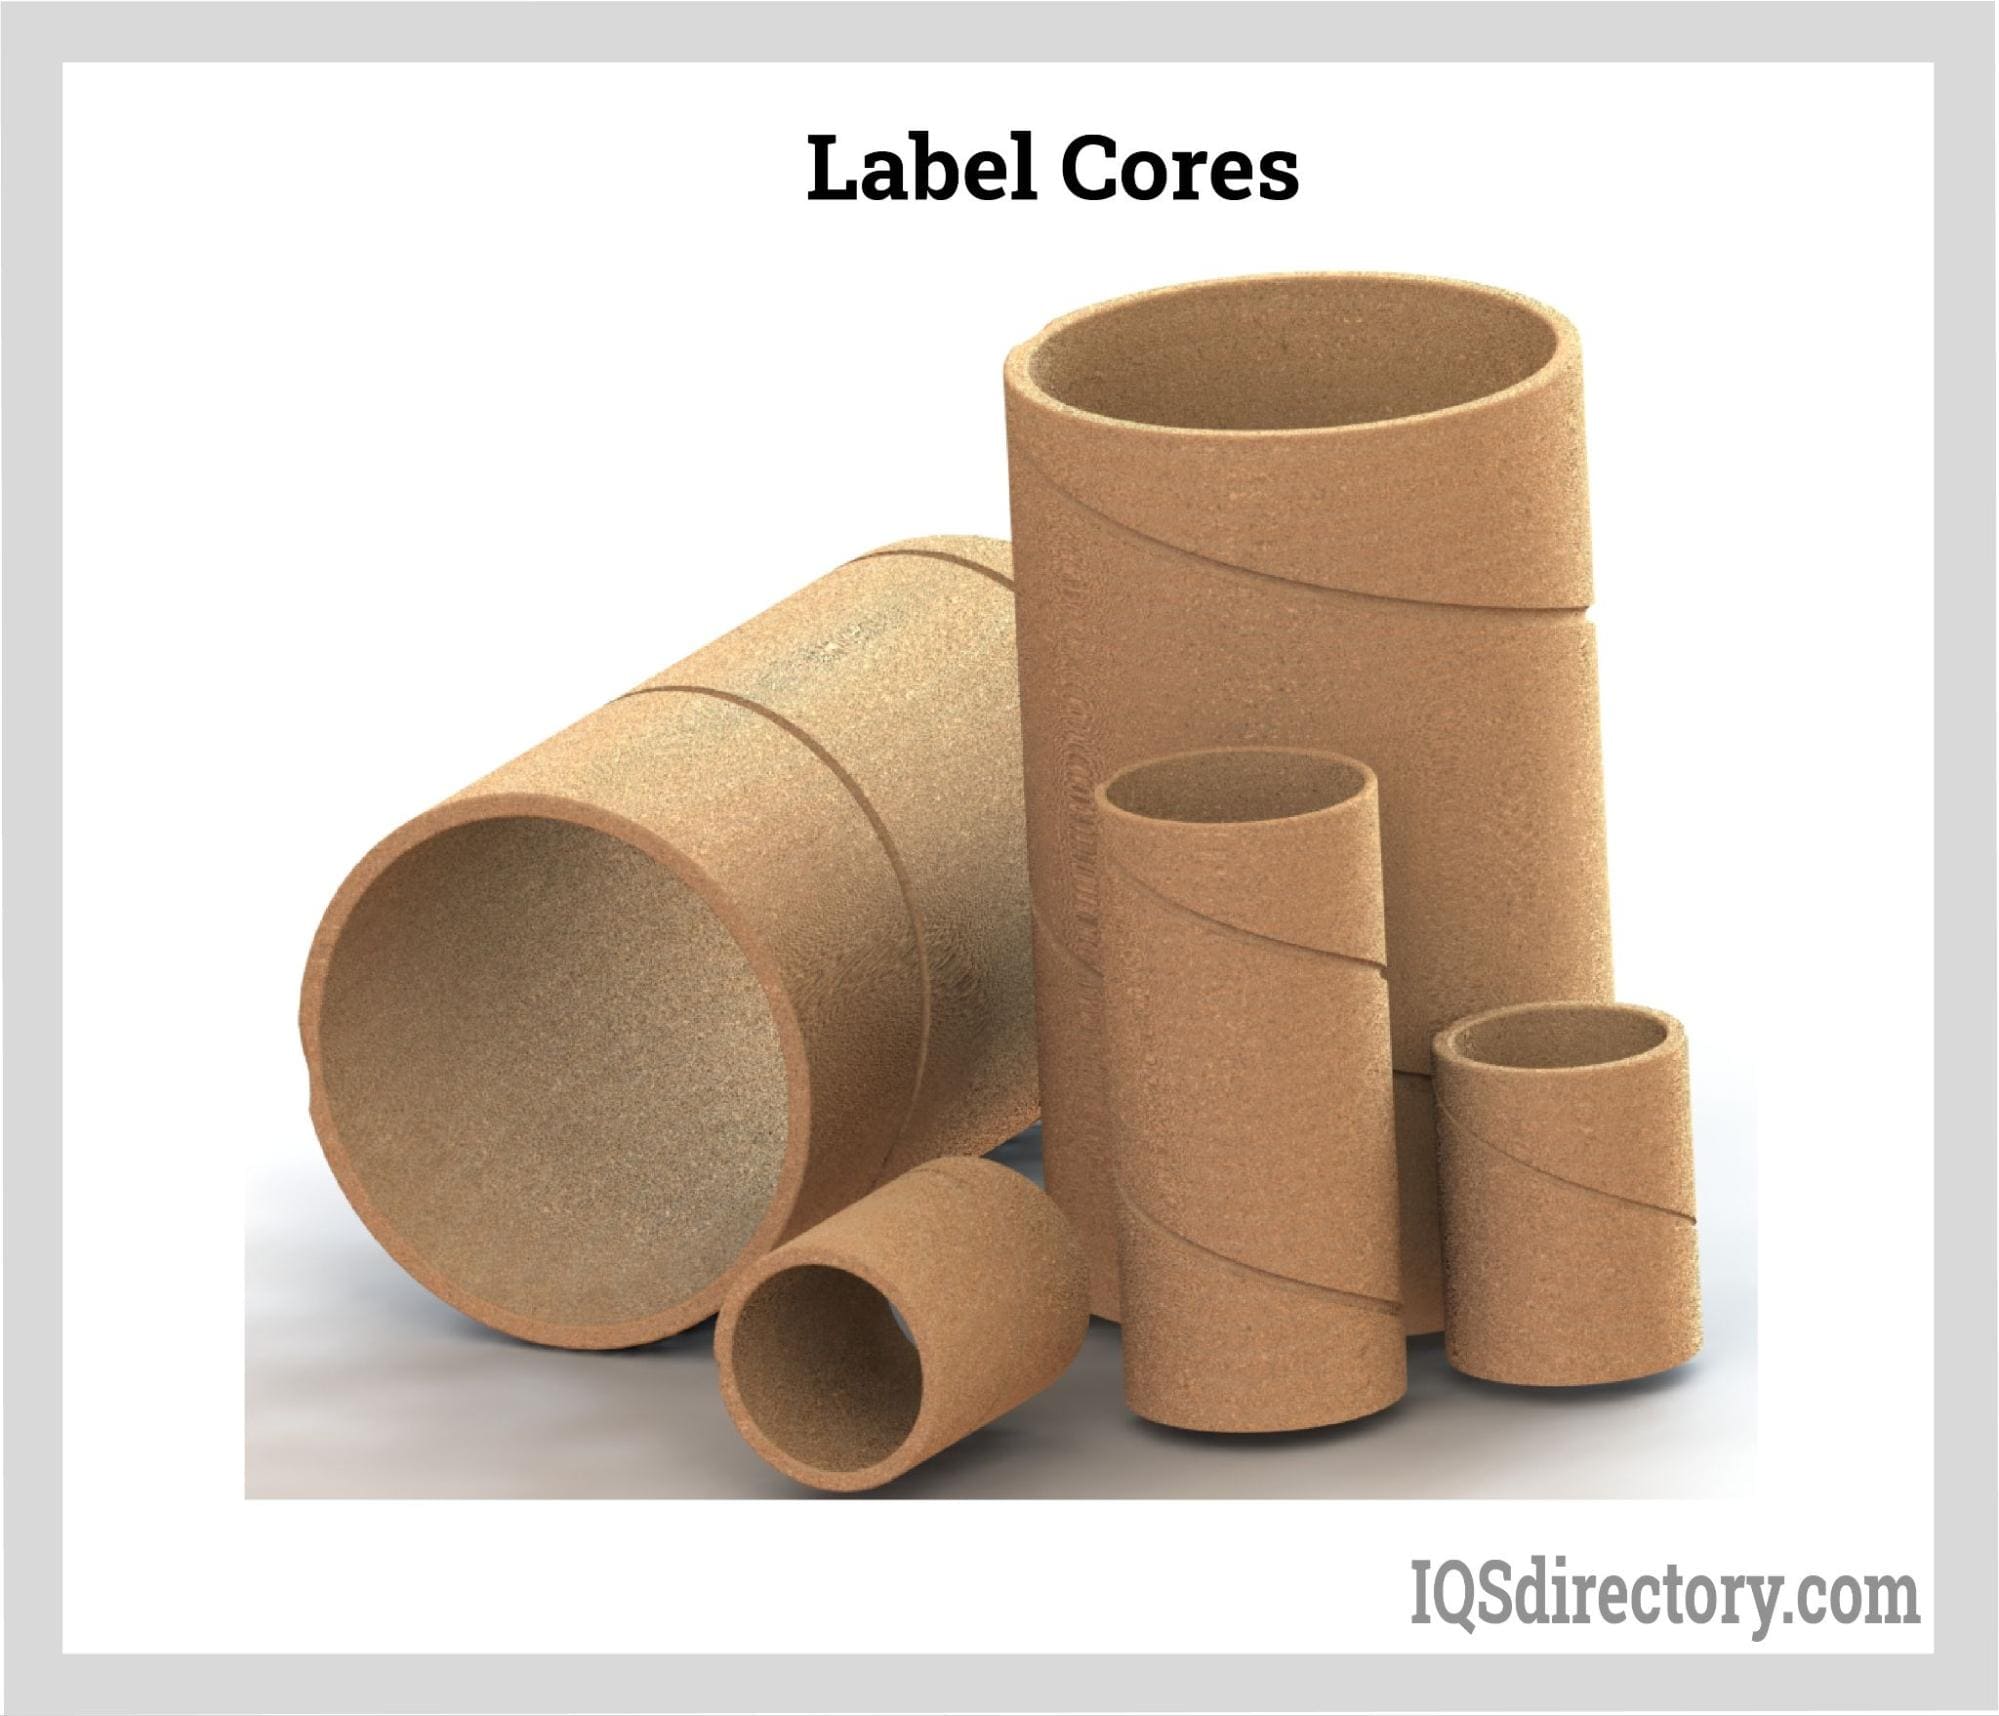 Label Cores